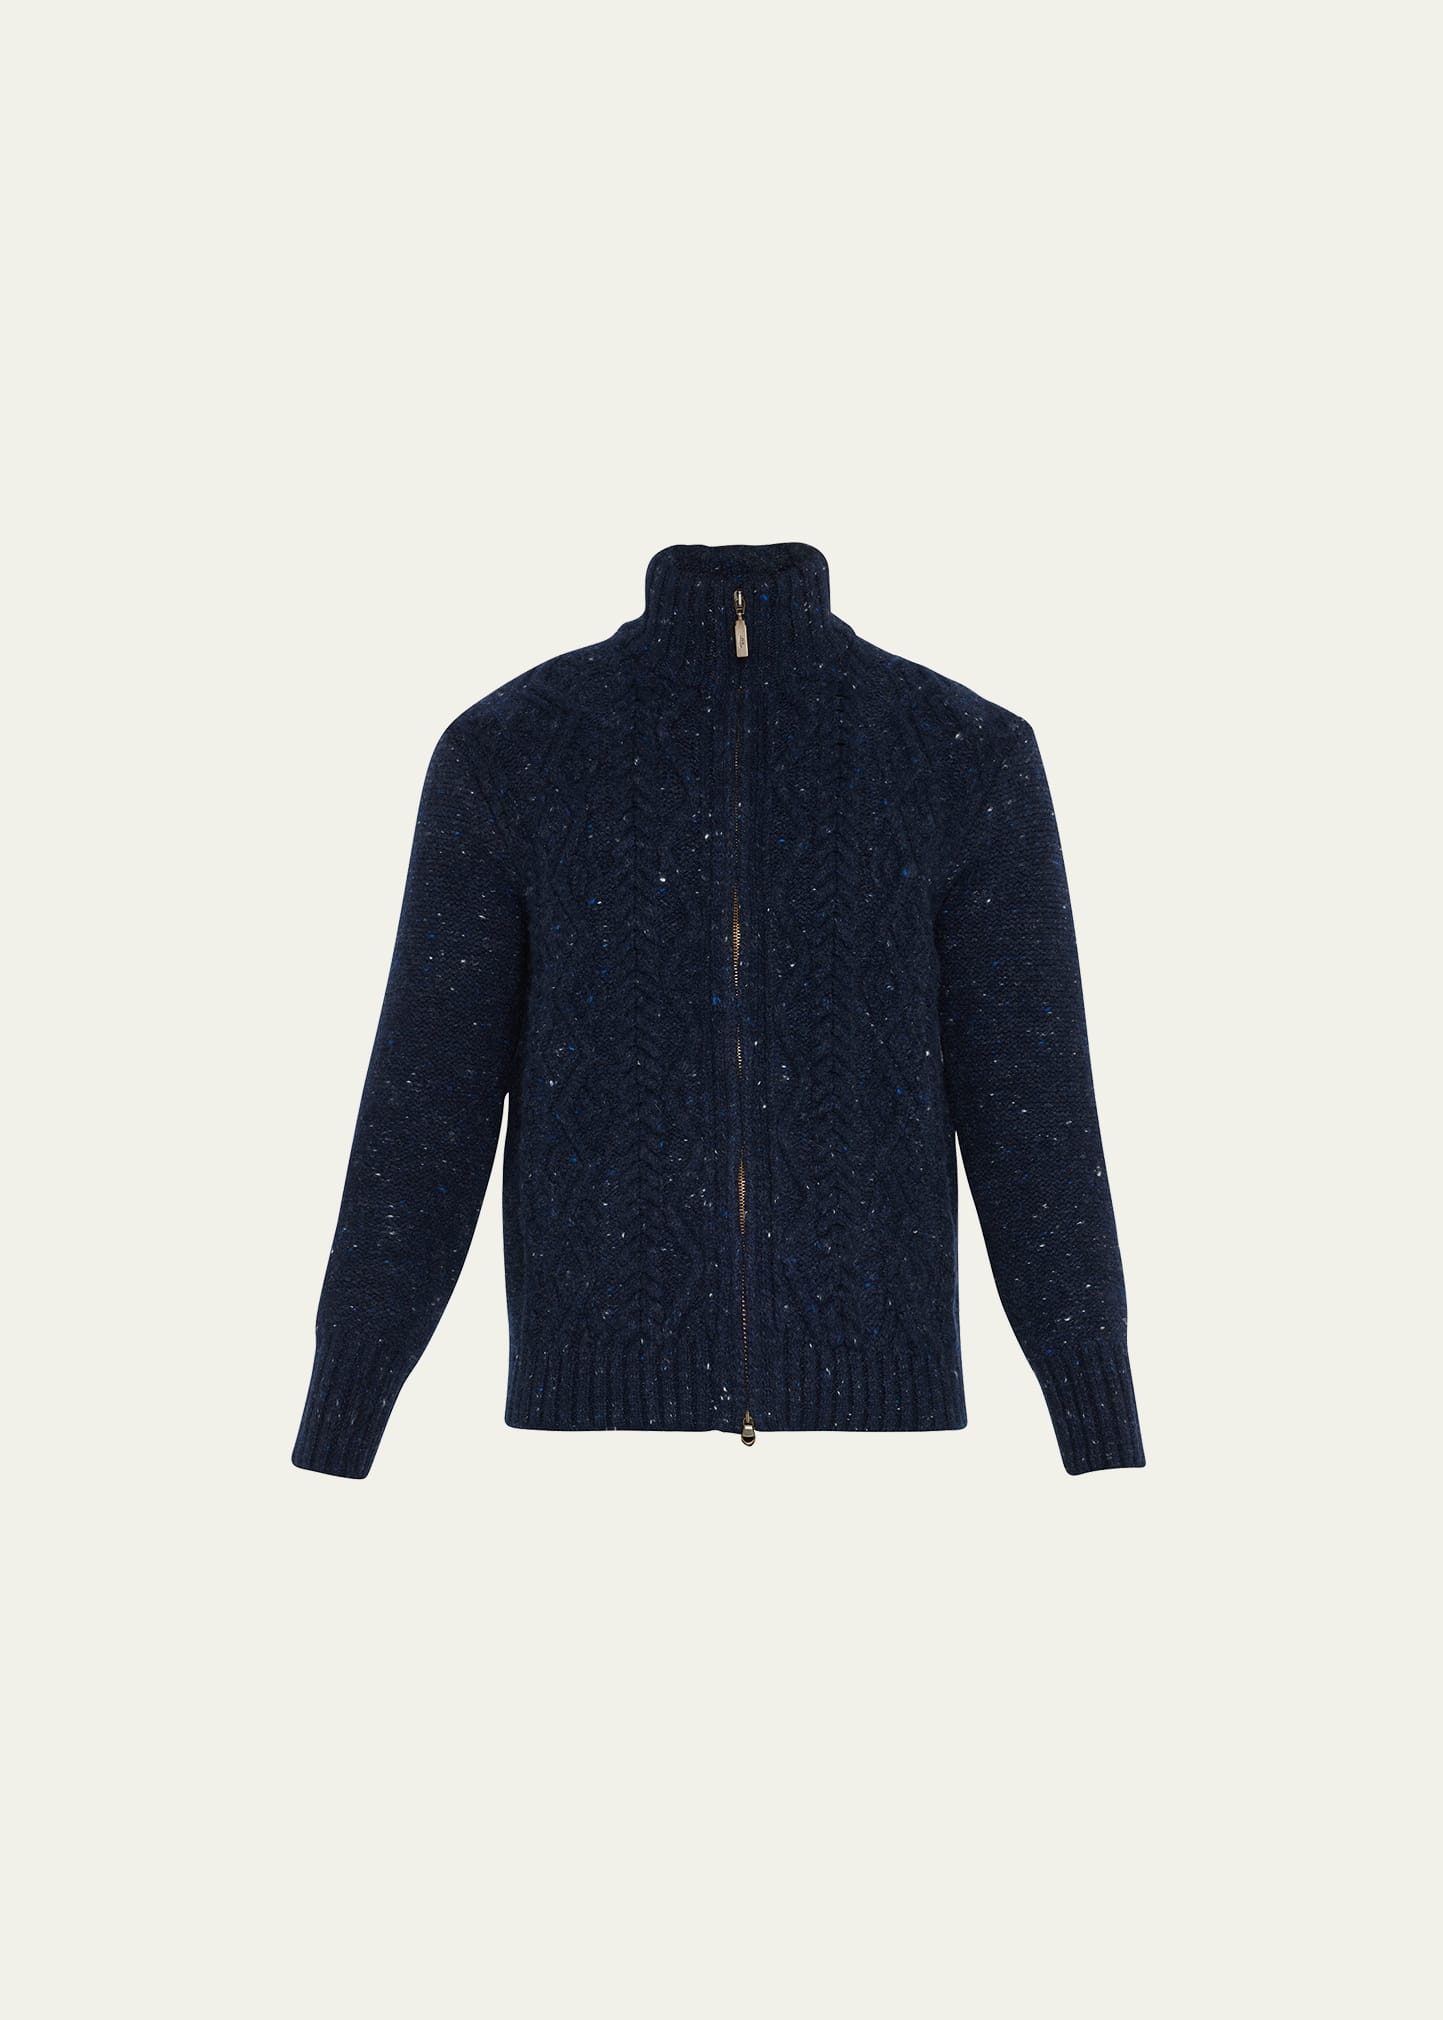 Inis Meain Men's Full-Zip Aran Cardigan Sweater